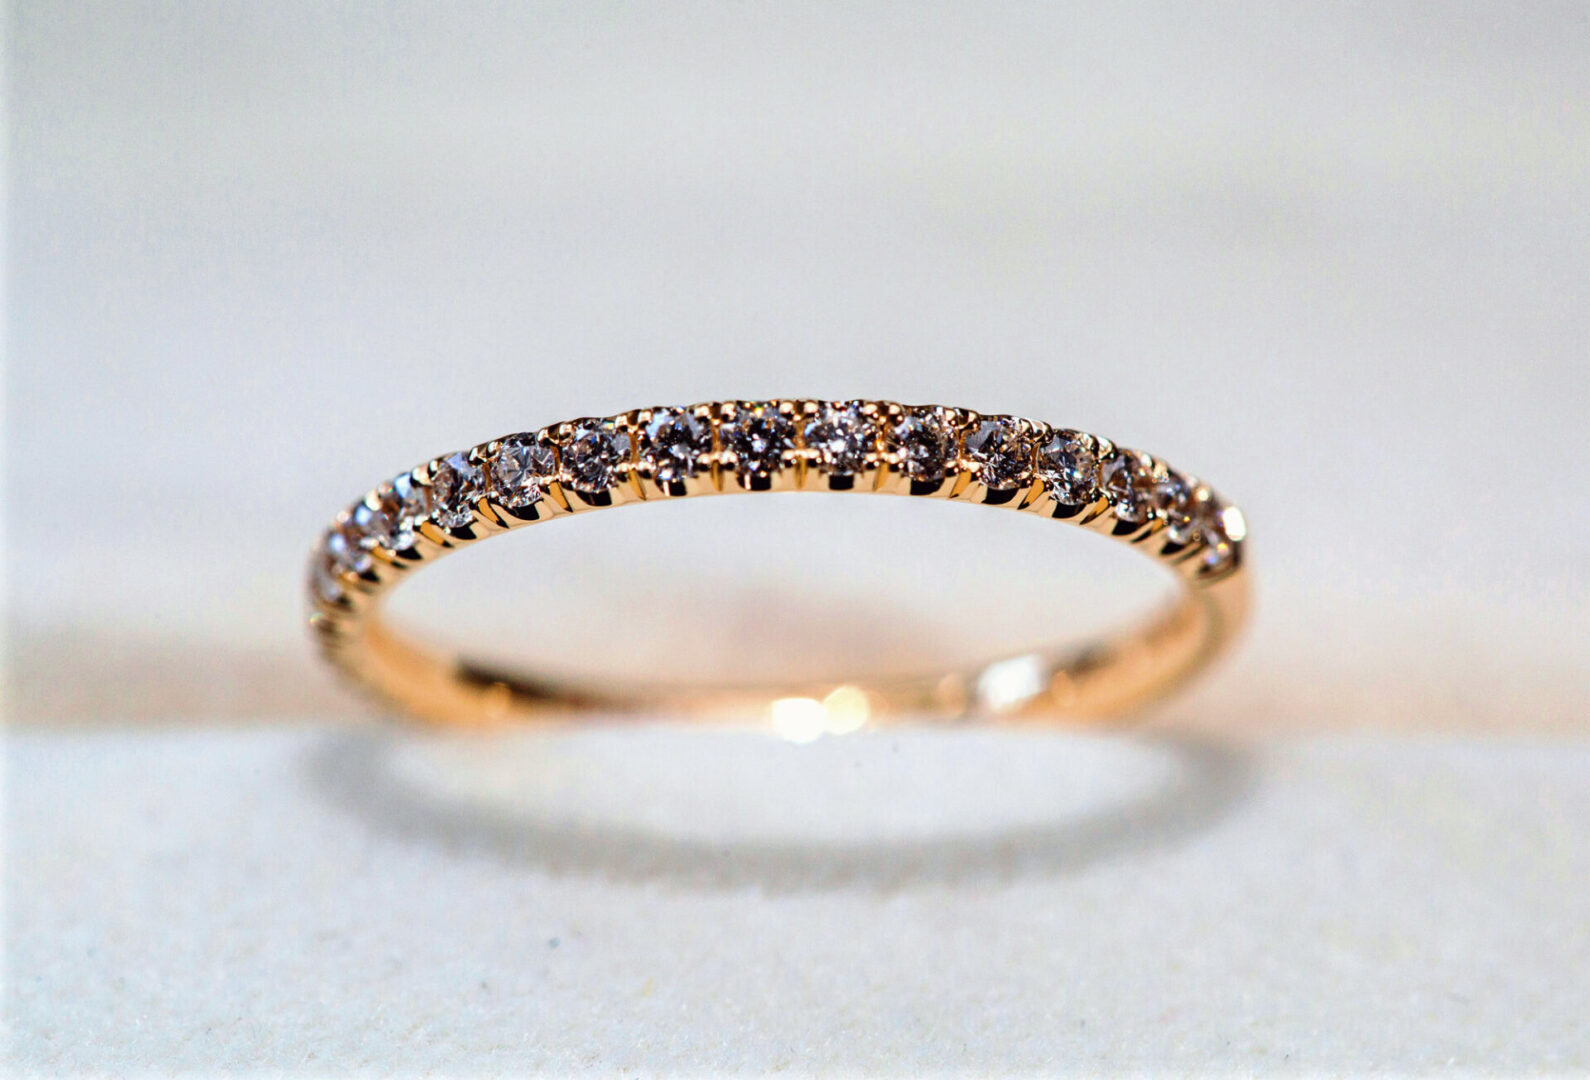 Close up image of a bracelet in golden color